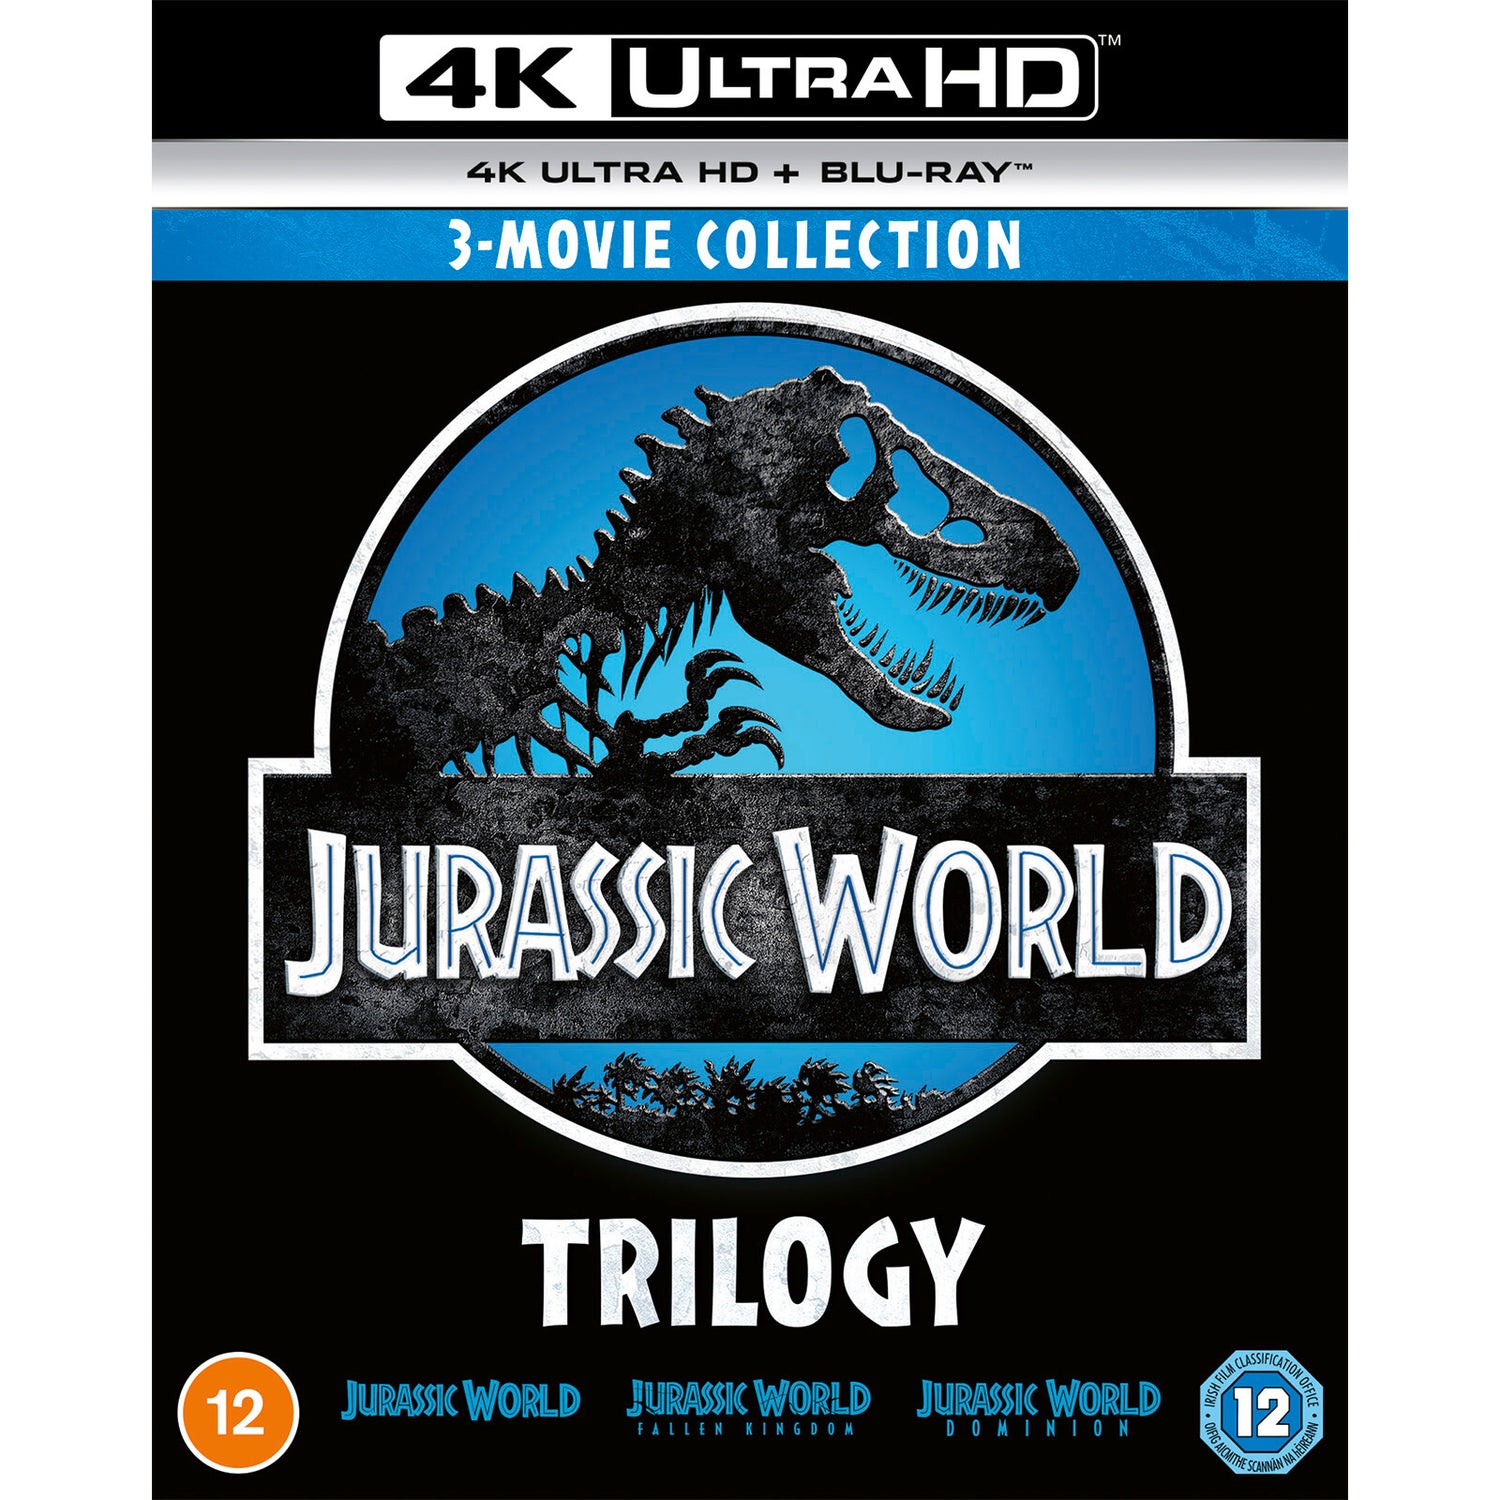 Films Blu Ray 4k Jurassic World Trilogy 4K Ultra HD (includes Blu-ray) 4K - Zavvi UK